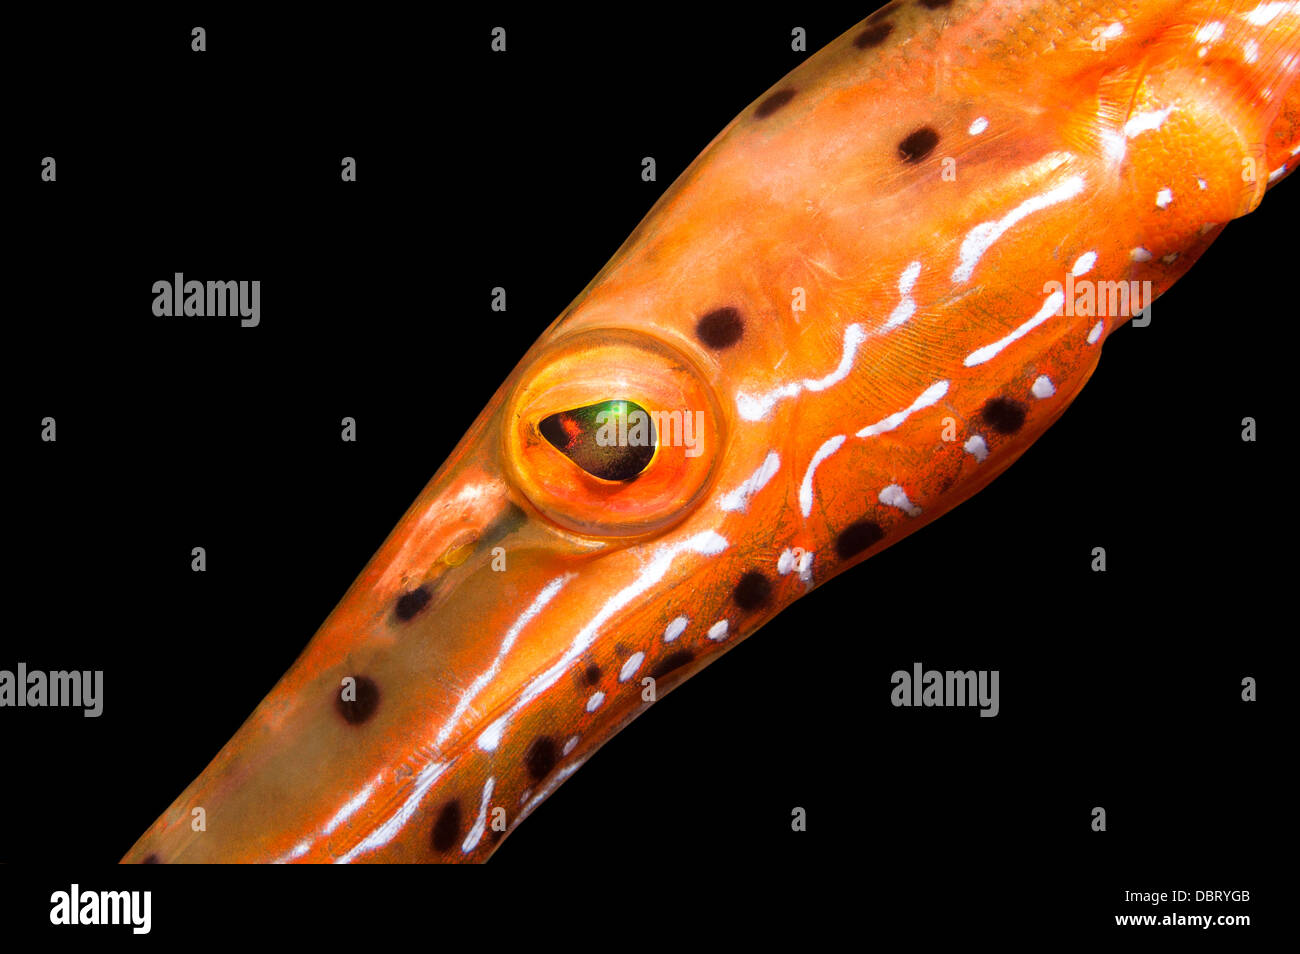 Un gros plan d'un poisson trompette orange affiche ses couleurs dynamiques et complexes qui. Banque D'Images